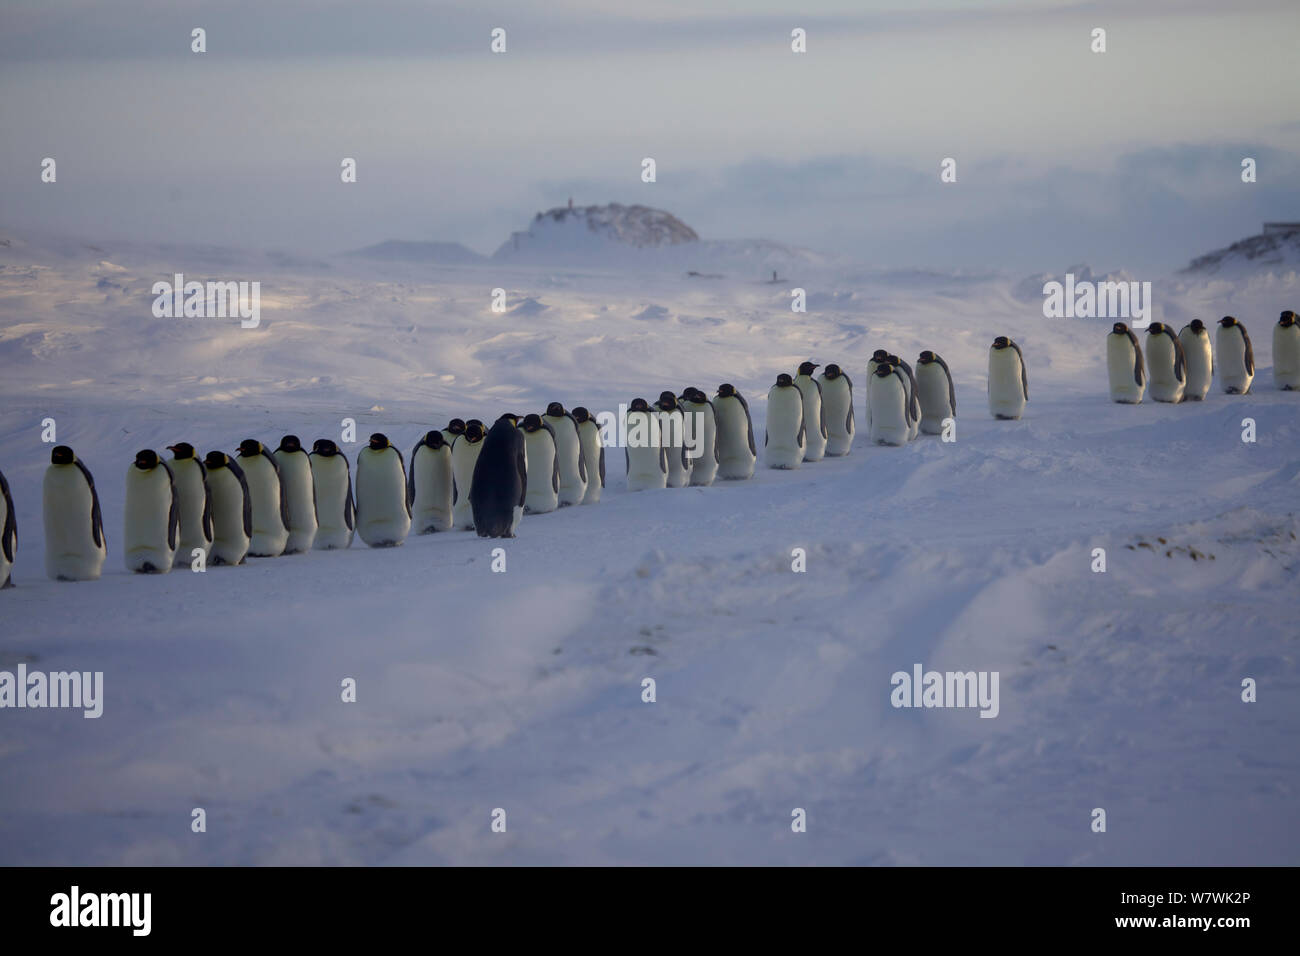 Procession de pingouins empereur mâle (Aptenodytes forsteri) mélanger avec l'oeuf (ou chick) dans la couvée, avec les femmes à la recherche de son compagnon, l'Antarctique, juillet. Banque D'Images